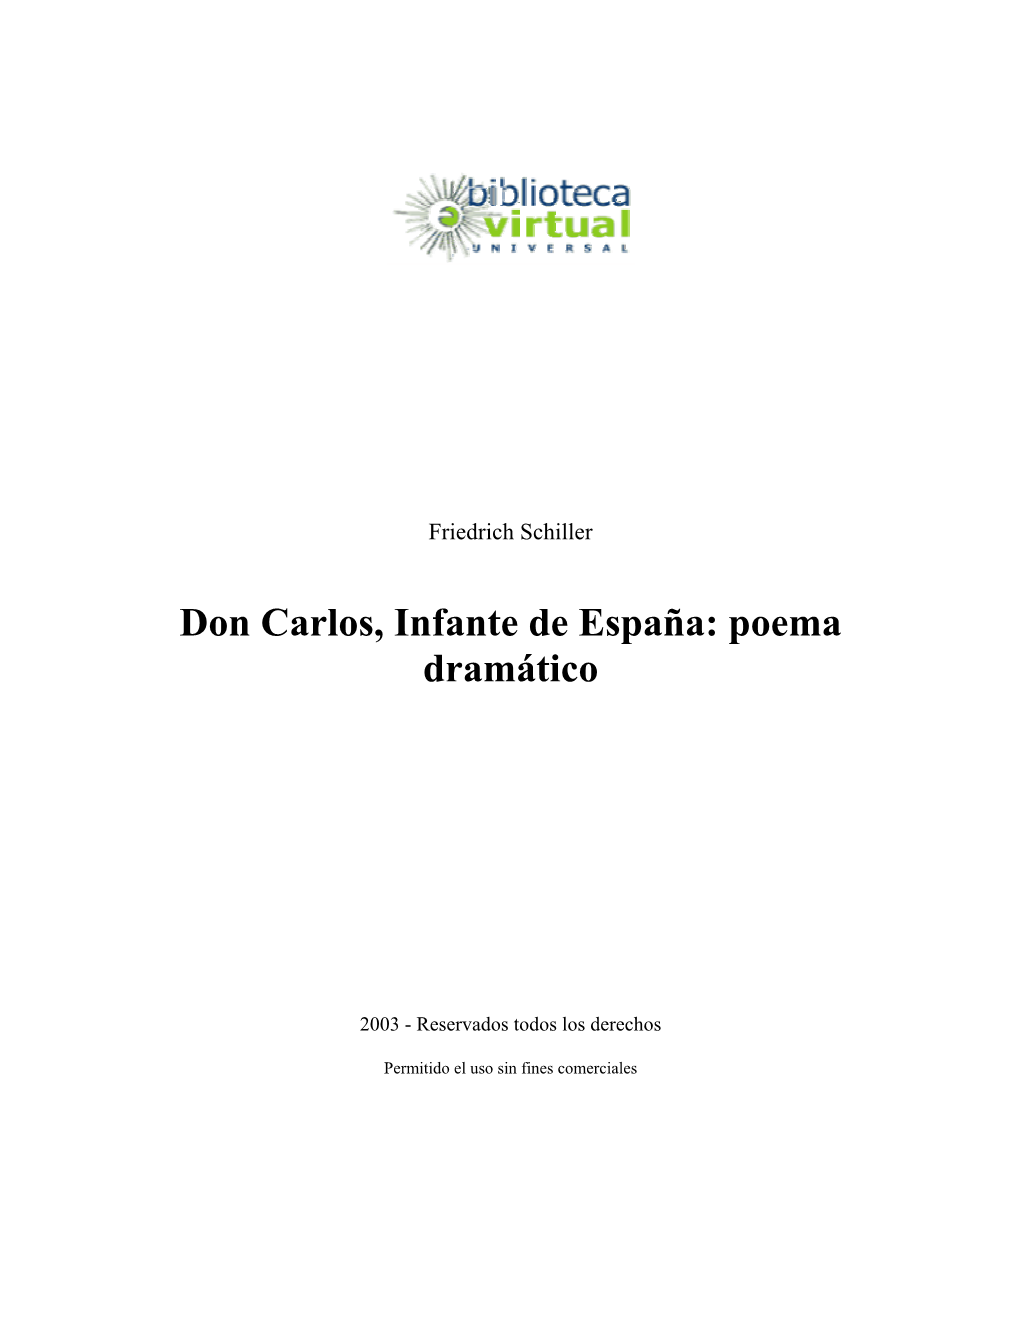 Don Carlos, Infante De España: Poema Dramático